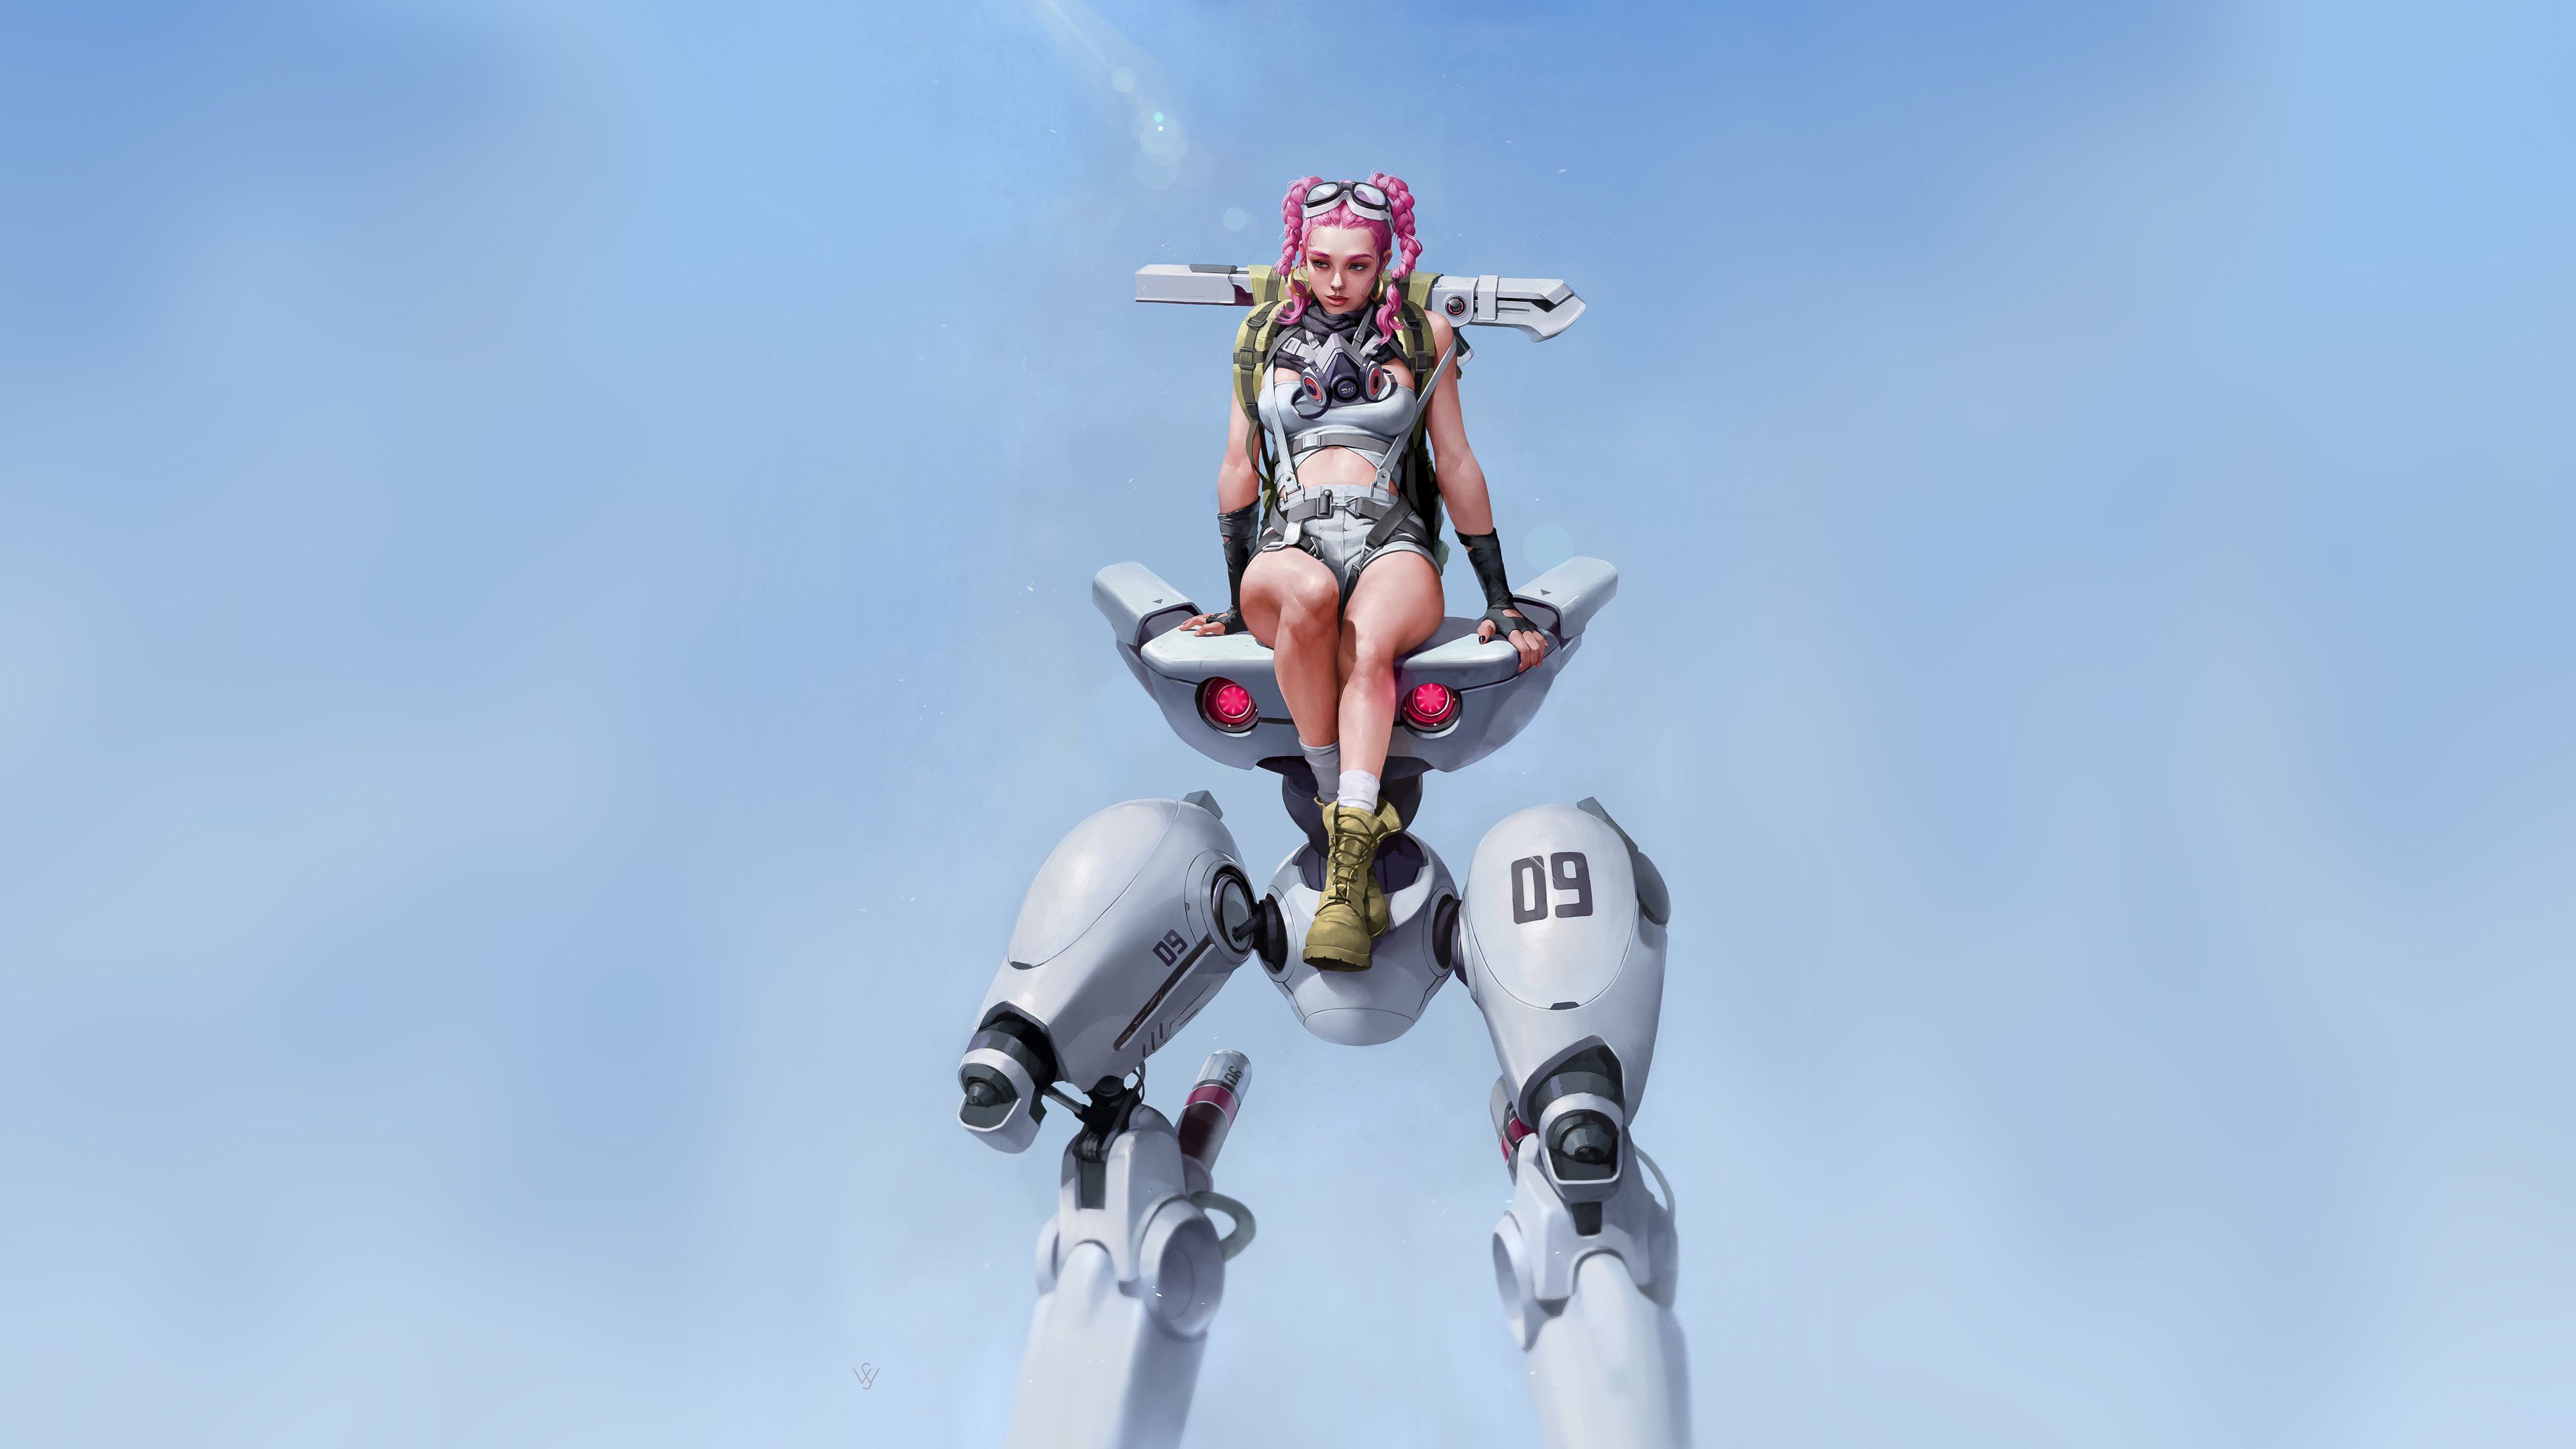 Braided Pink Hair Cyberpunk Robot Girl Robot Wallpaper, Hd Wallpaper, Digital Art Wallpaper, Cyberpunk Wa. Robot Girl, Robot Wallpaper, Android Wallpaper Anime